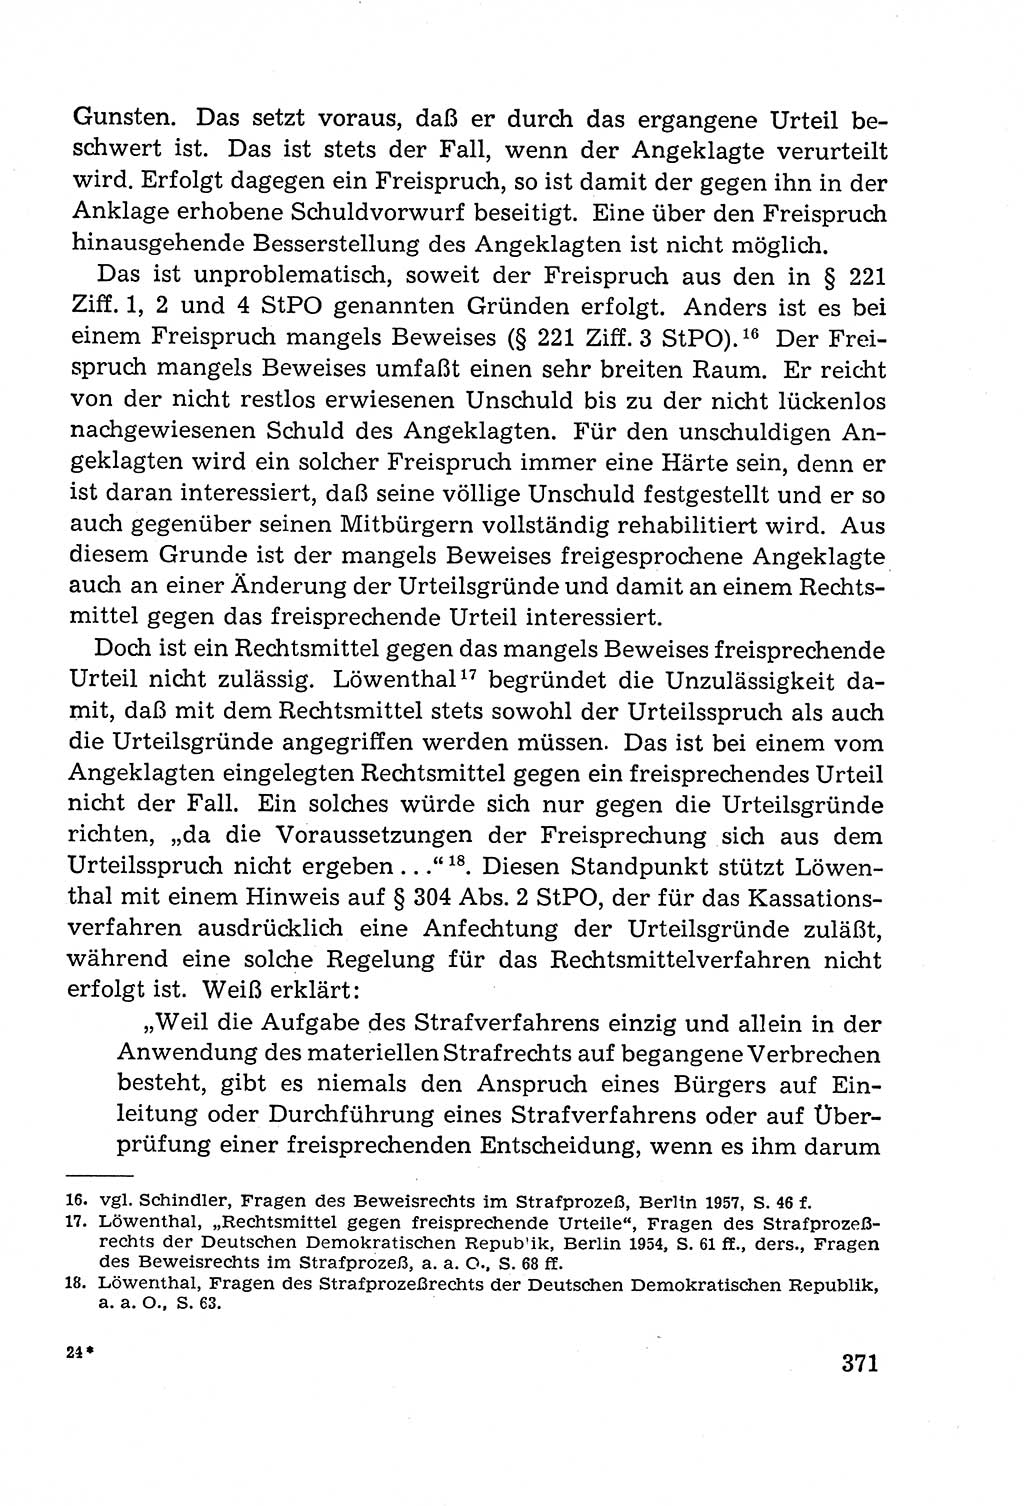 Leitfaden des Strafprozeßrechts der Deutschen Demokratischen Republik (DDR) 1959, Seite 371 (LF StPR DDR 1959, S. 371)